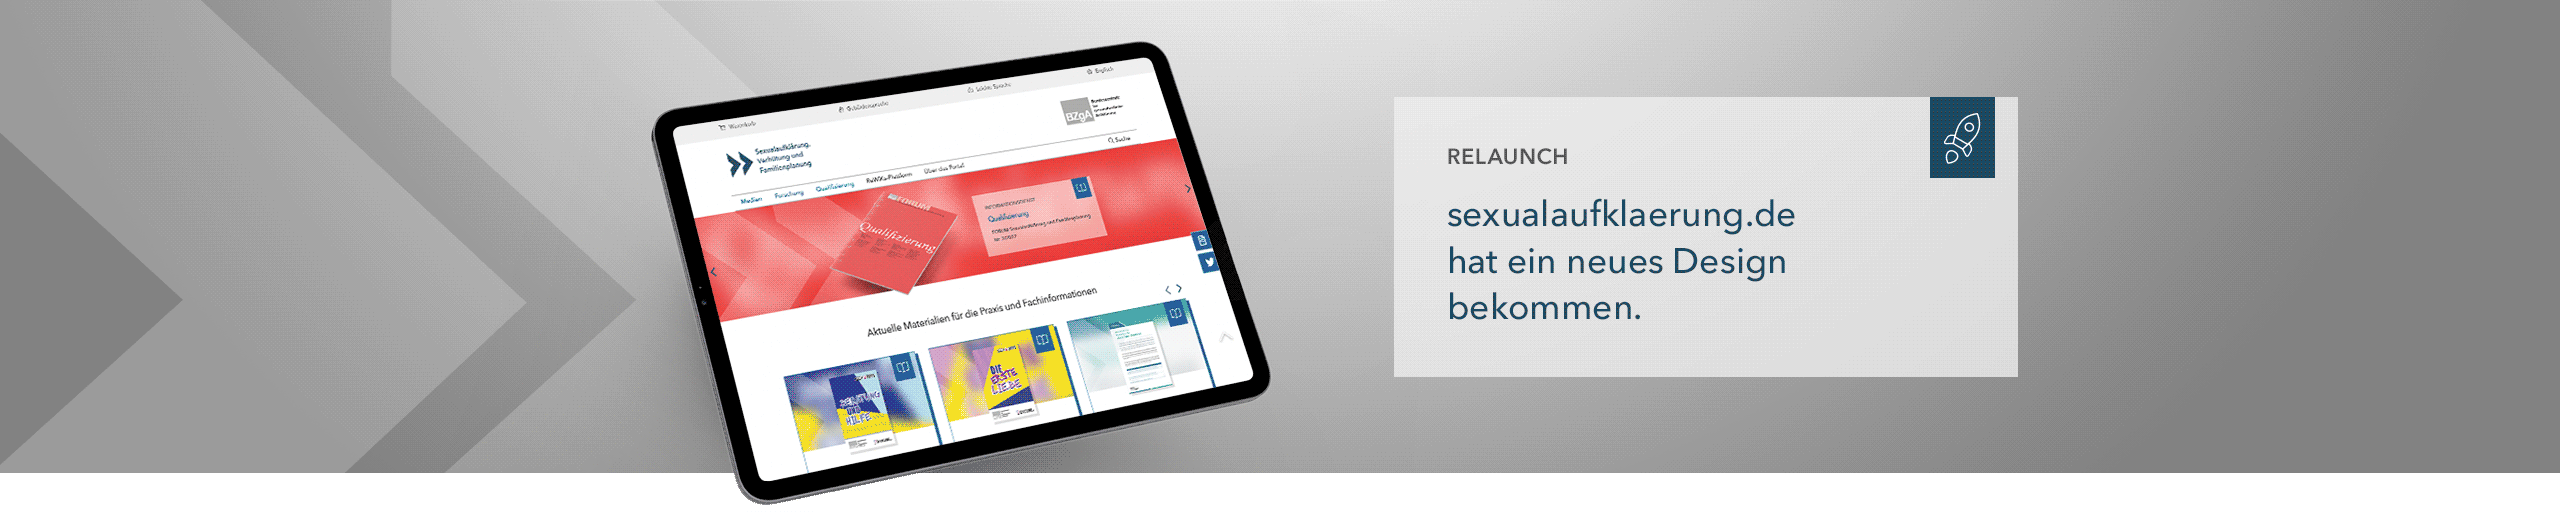 Das Bannerbild zeigt ein Tablet mit dem Screenshot der Webseite. Rechtsdavon steht der sexualaufklaerun.de hat ein neues Design bekommen.